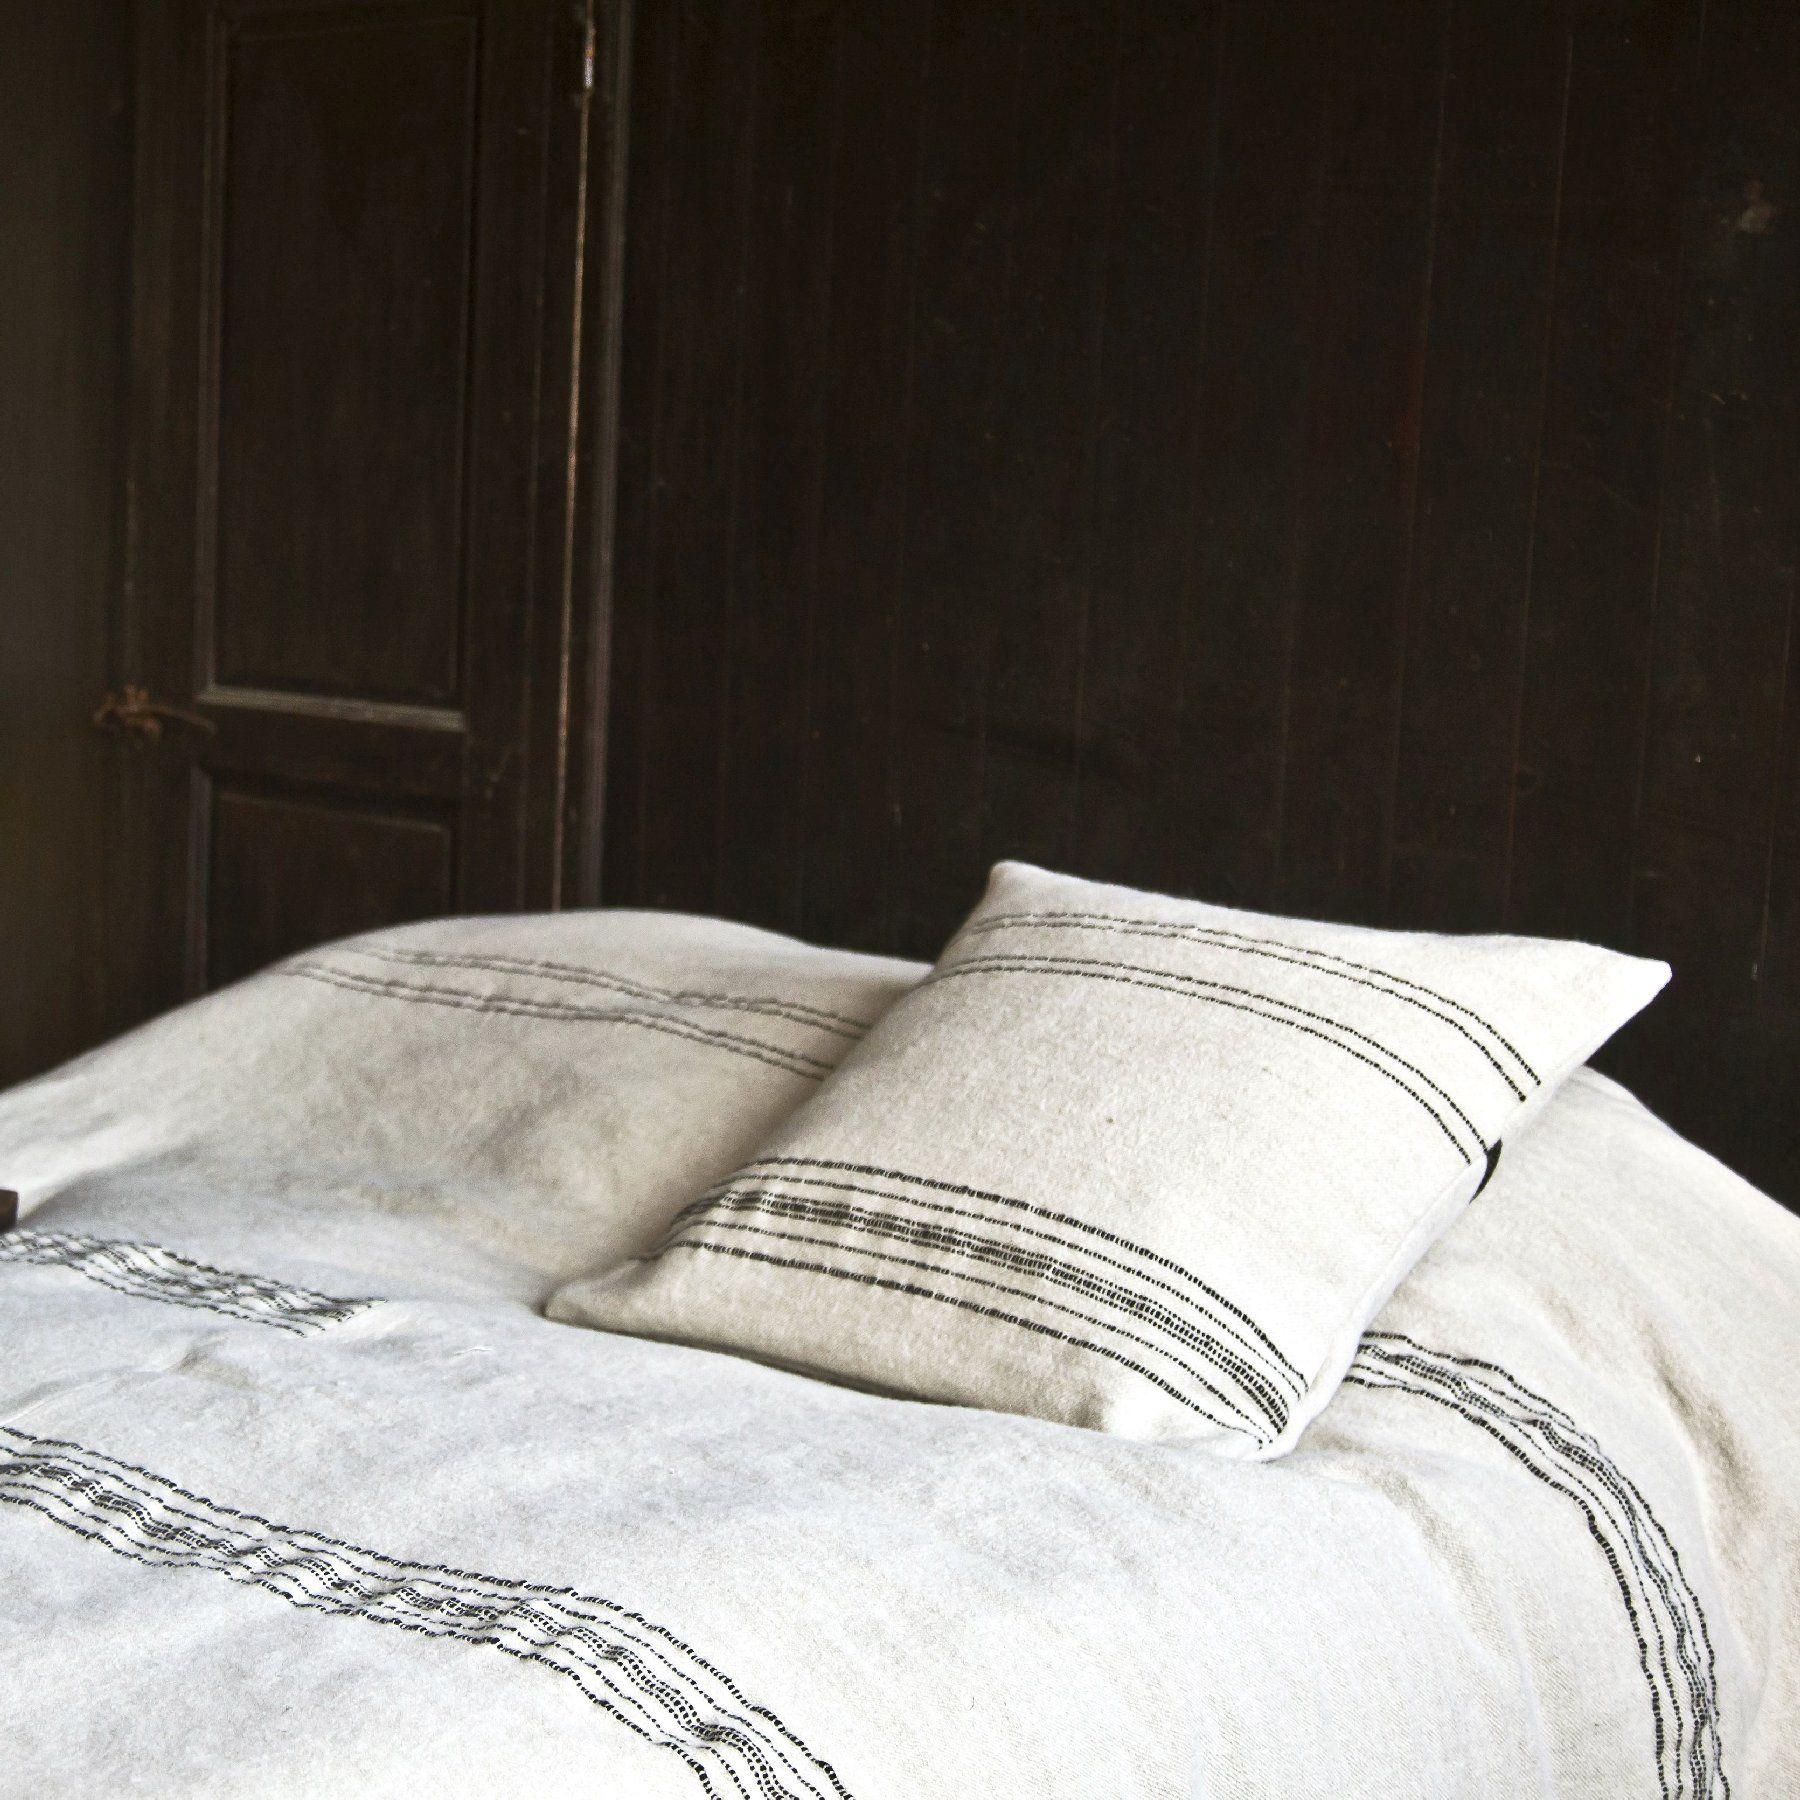 Inspirés des couvertures marocaines trouvées sur les marchés, ces couvre-lits sont constitués de deux pièces cousues ensemble au centre, créant des rayures noires asymétriques sur un fond d'os solide. Les mêmes rayures se retrouvent sur le devant